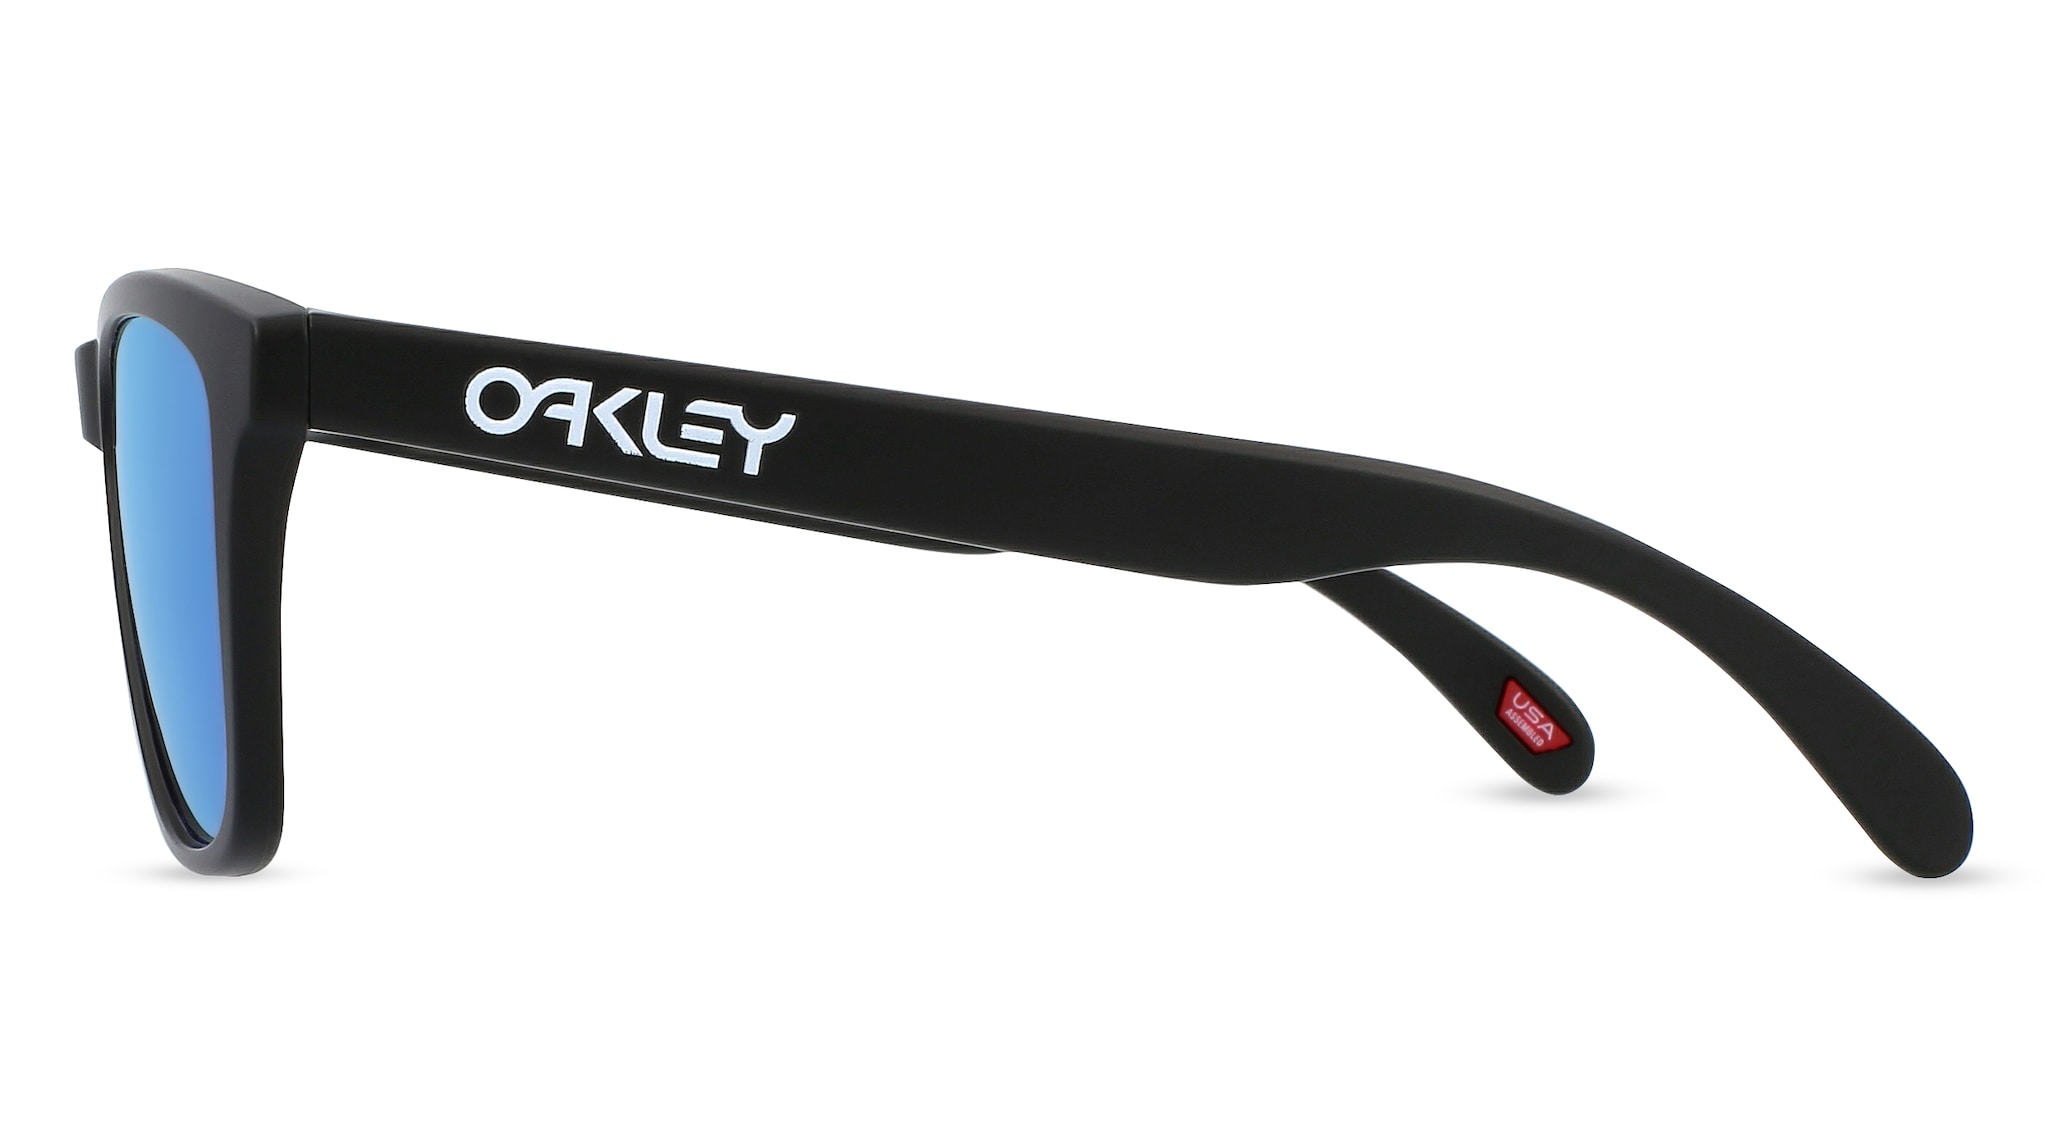 Oakley OO9013 FROGSKINS